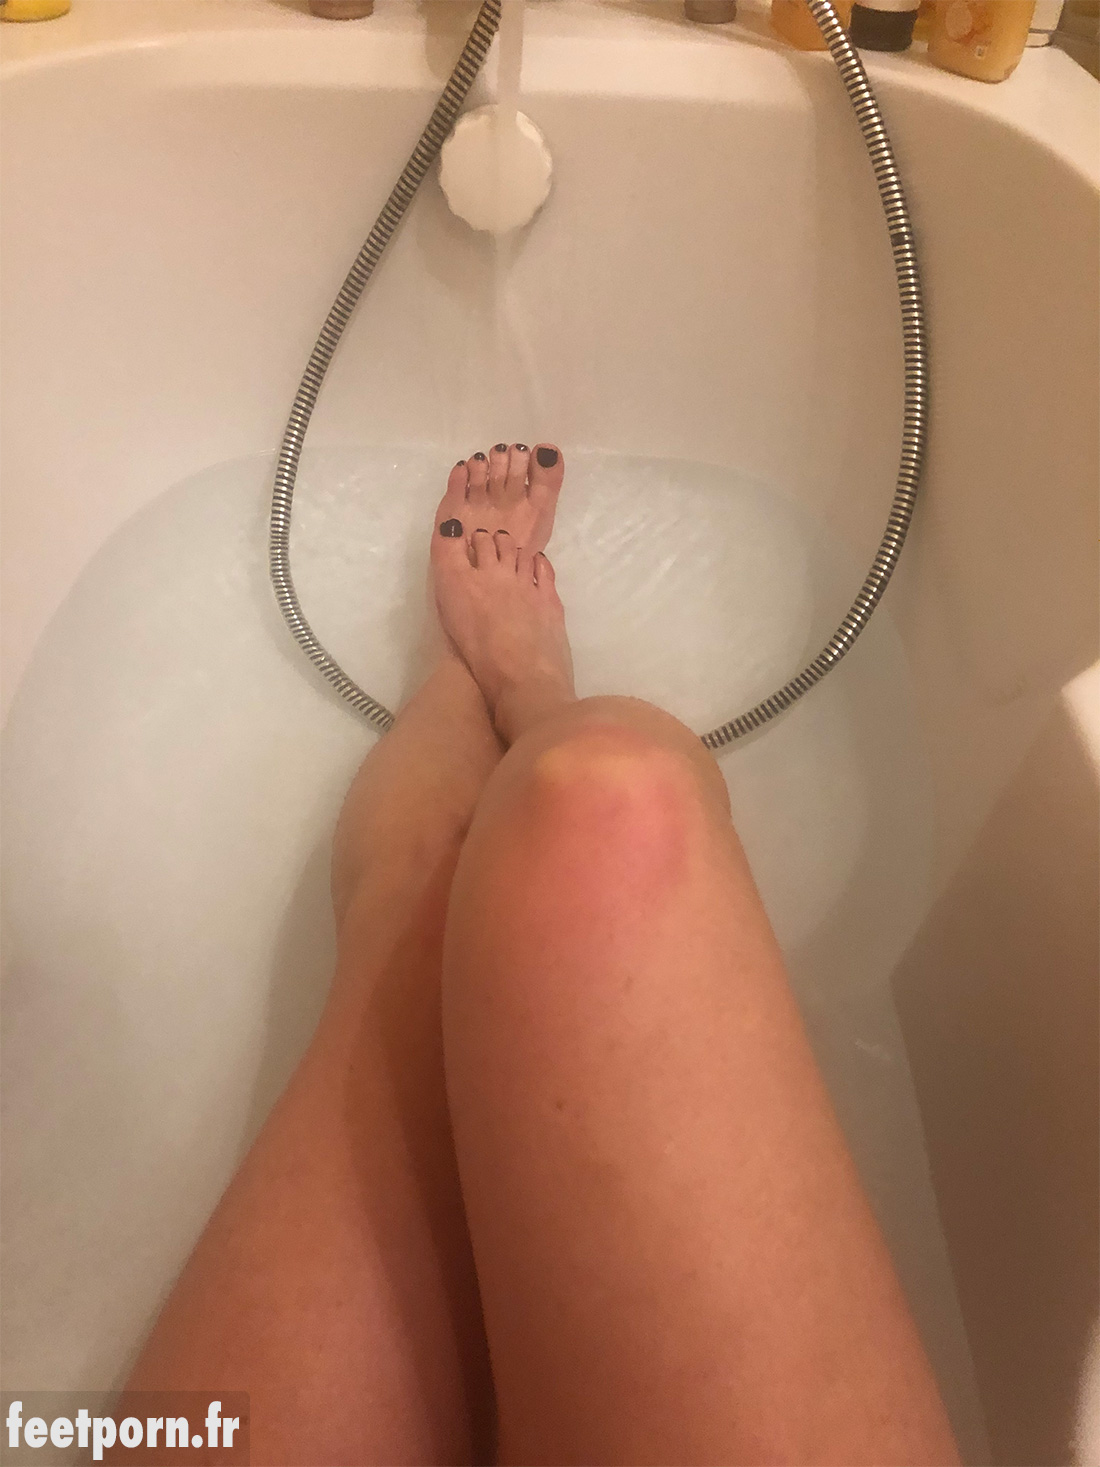 Une femme mature exhibe ses pieds dans son bain